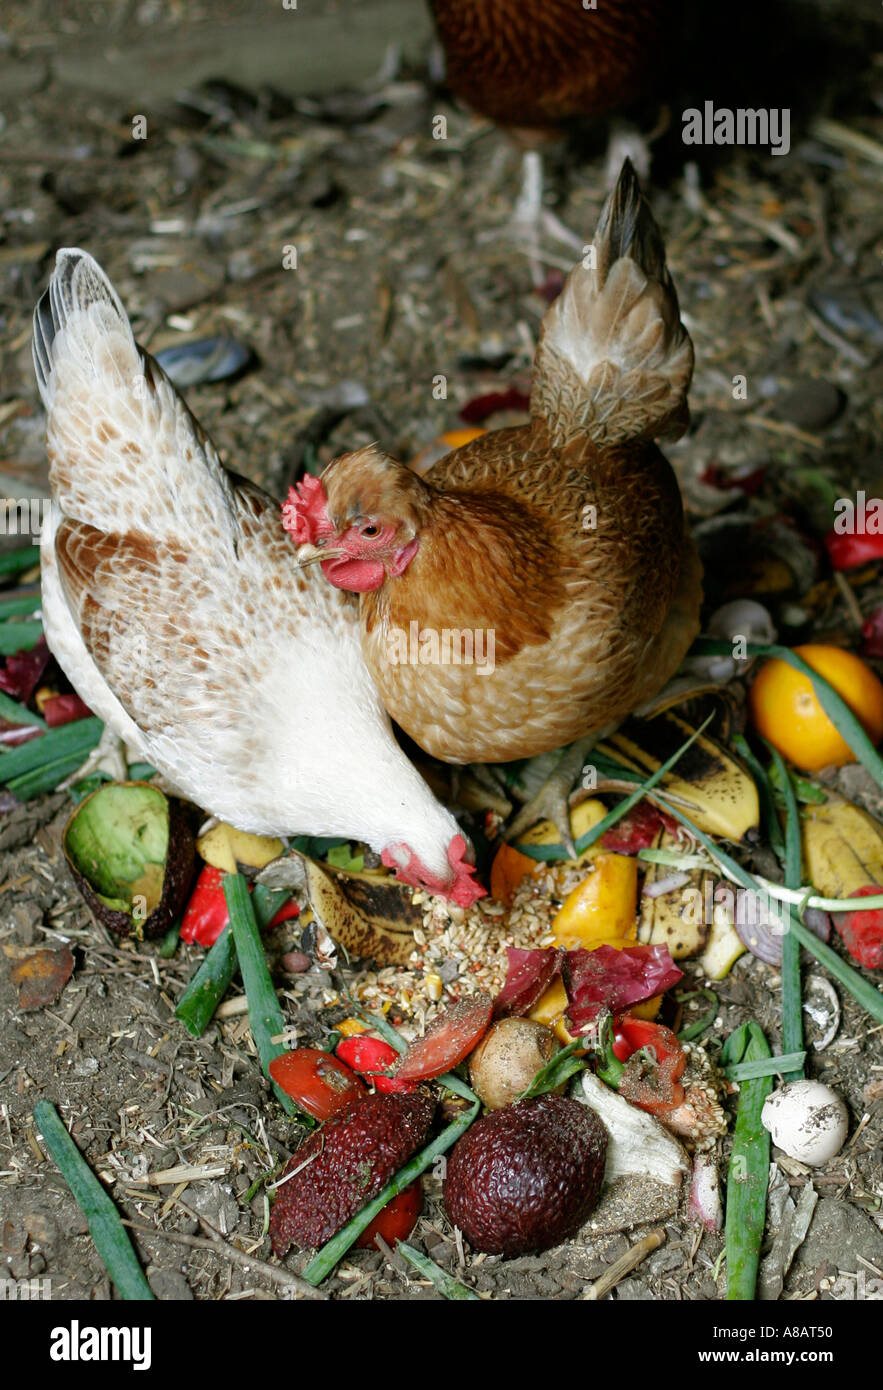 Poules avec prise de maison déchets organiques Banque D'Images